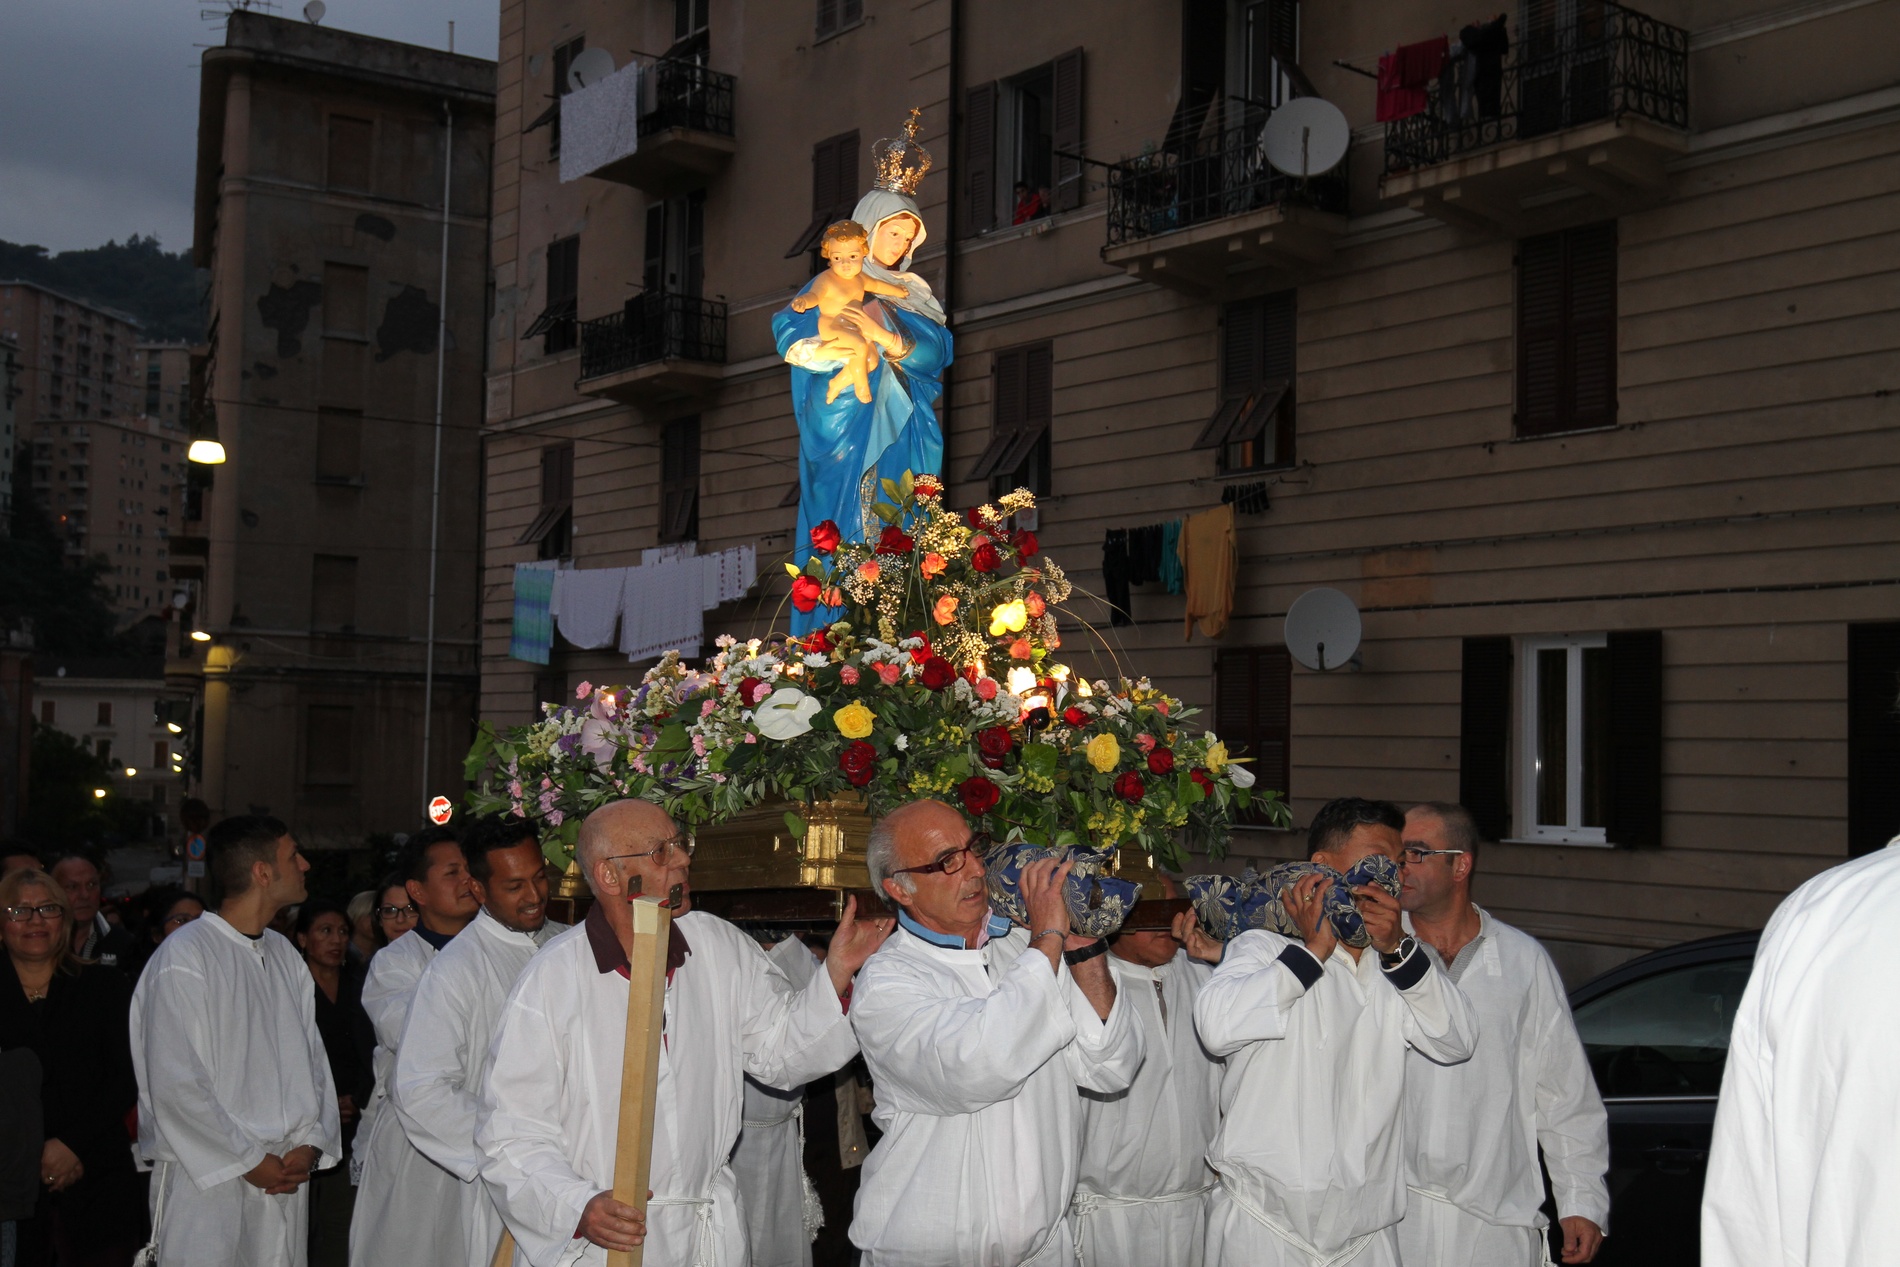 processione-madonna-2015-05-31-21-07-33